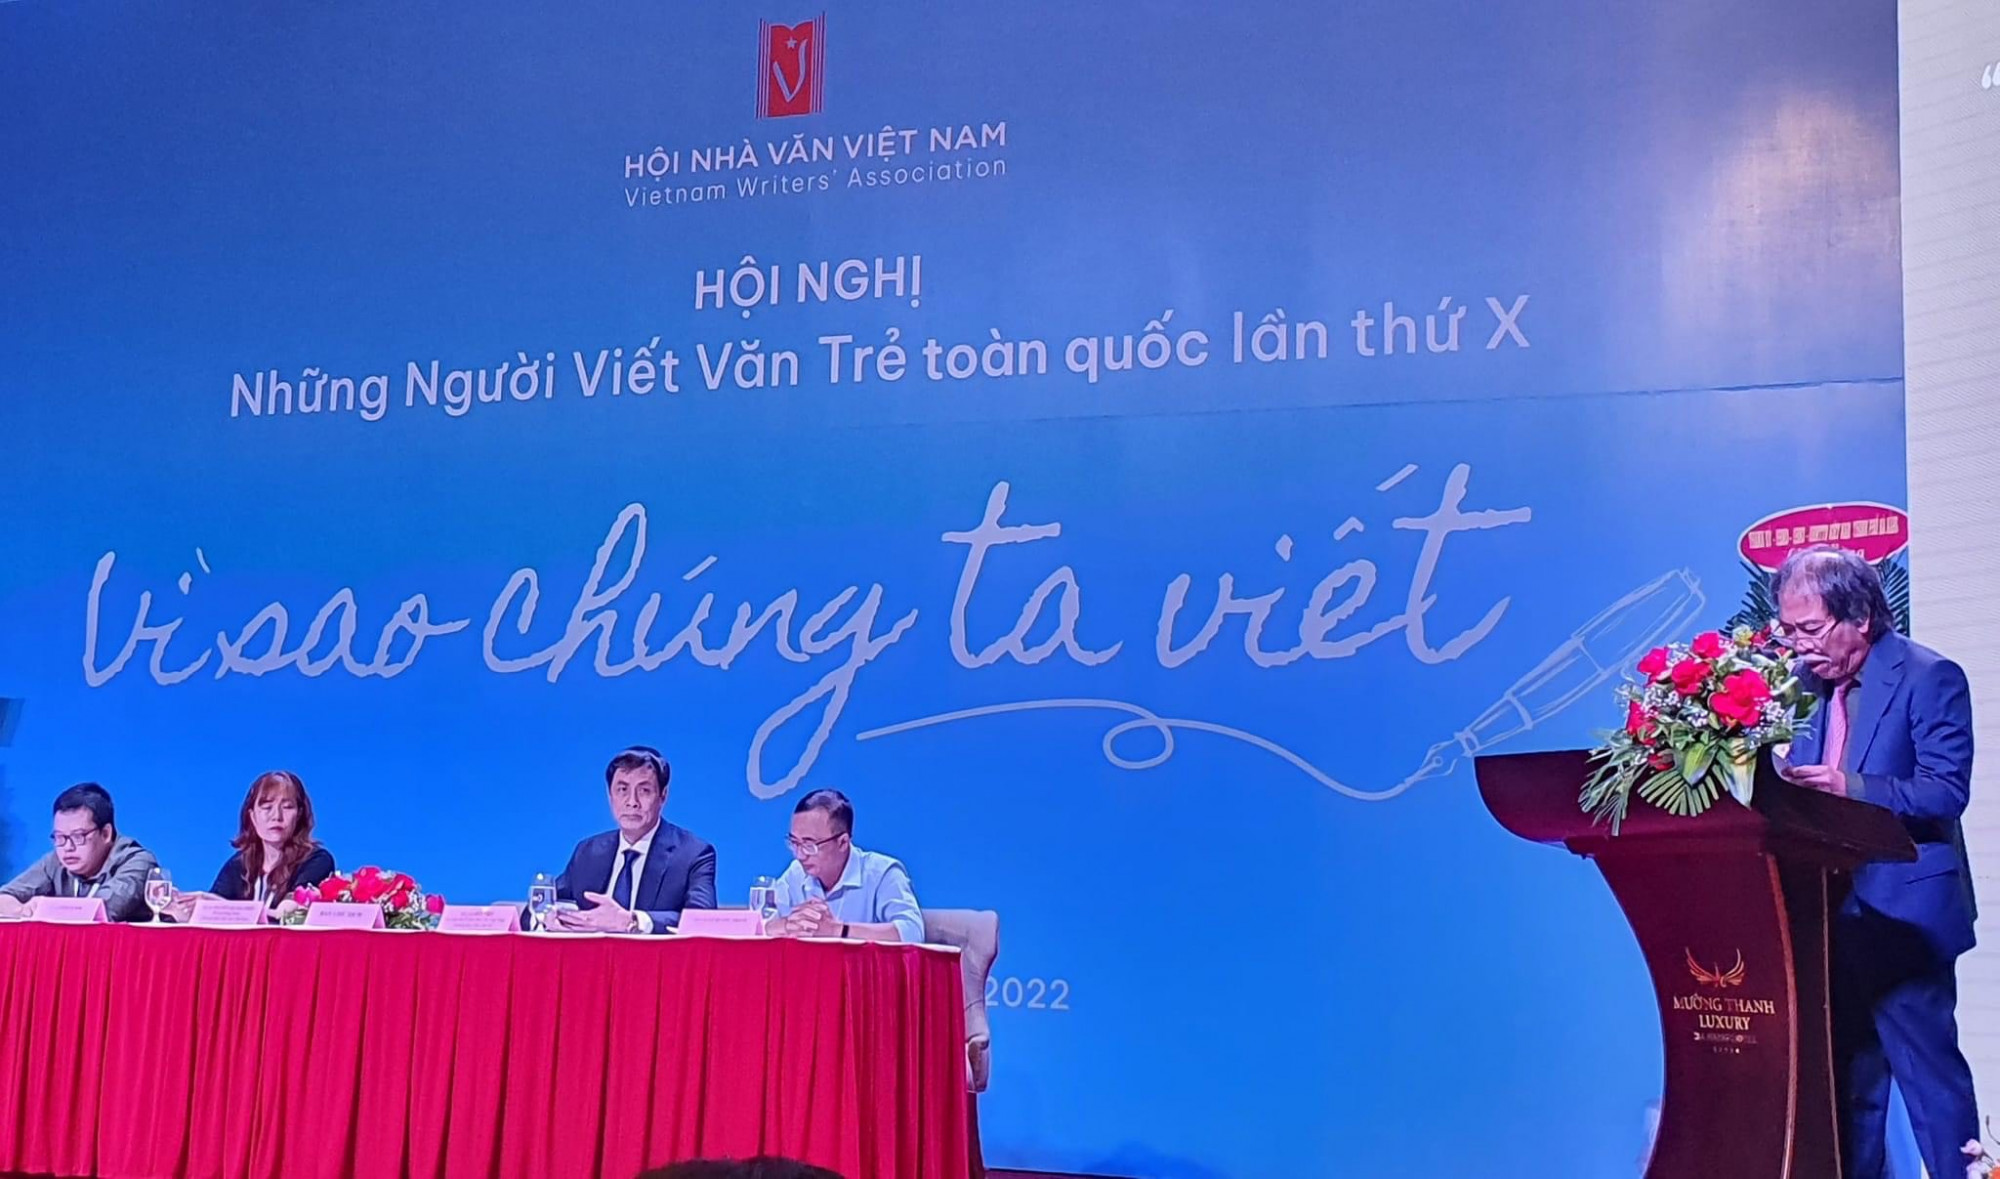 Nhà thơ Nguyễn Quang Thiều, Chủ tịch Hội Nhà văn Việt Nam phát biểu khai mạc hội nghị